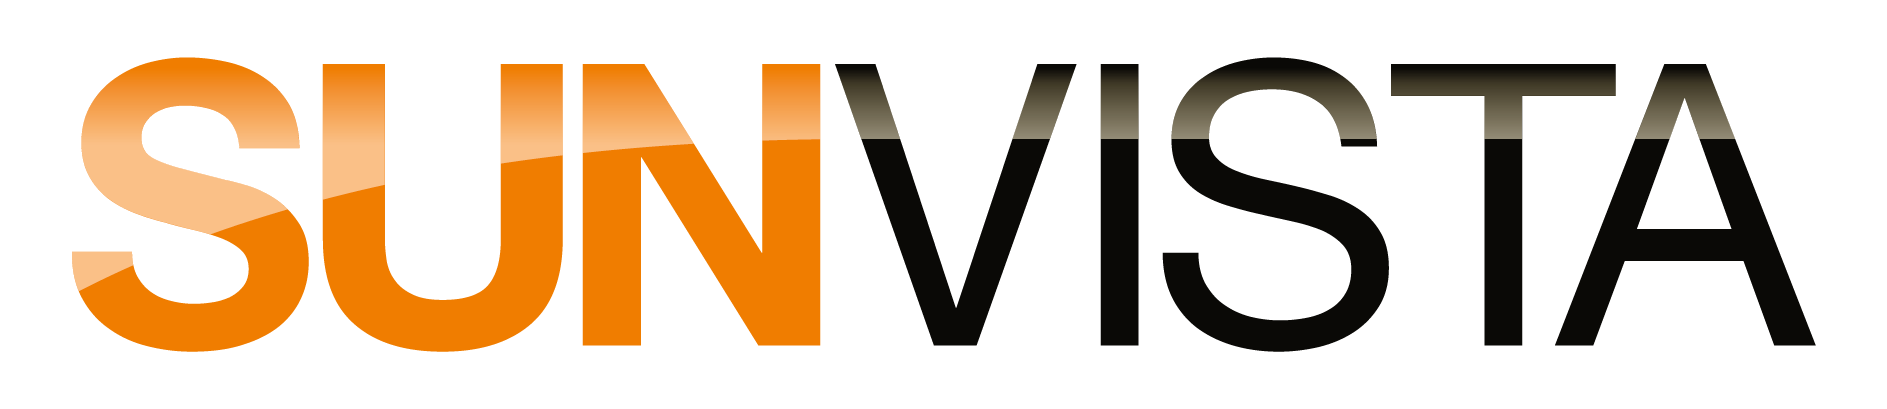 SUNVISTA Logo-01